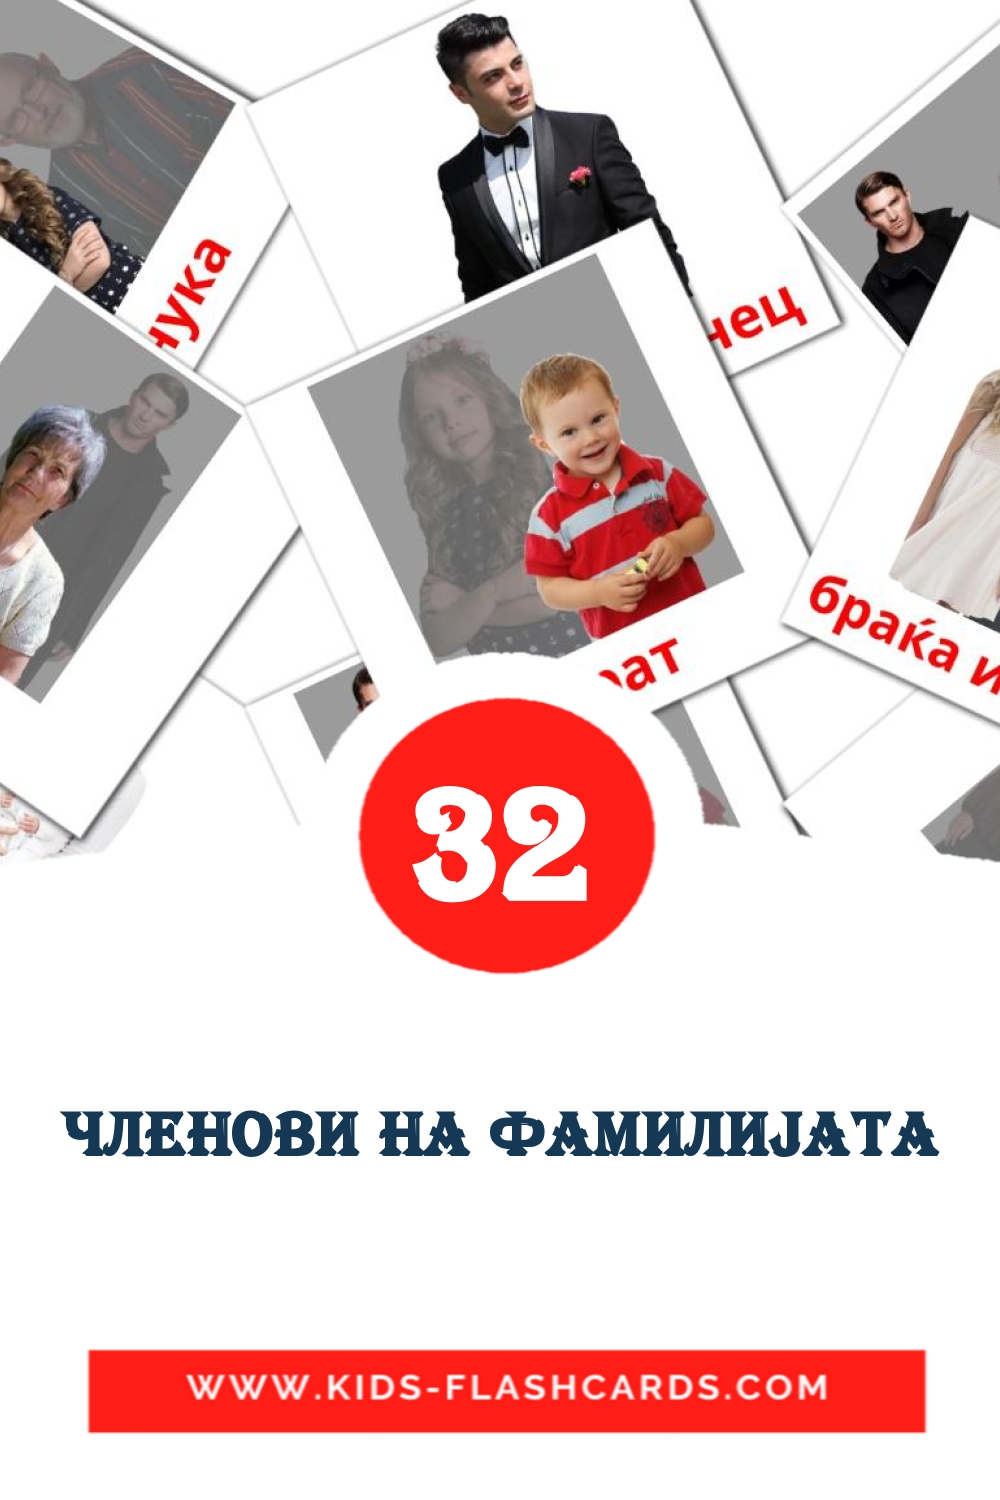 32 Членови на фамилиjата fotokaarten voor kleuters in het macedonisch